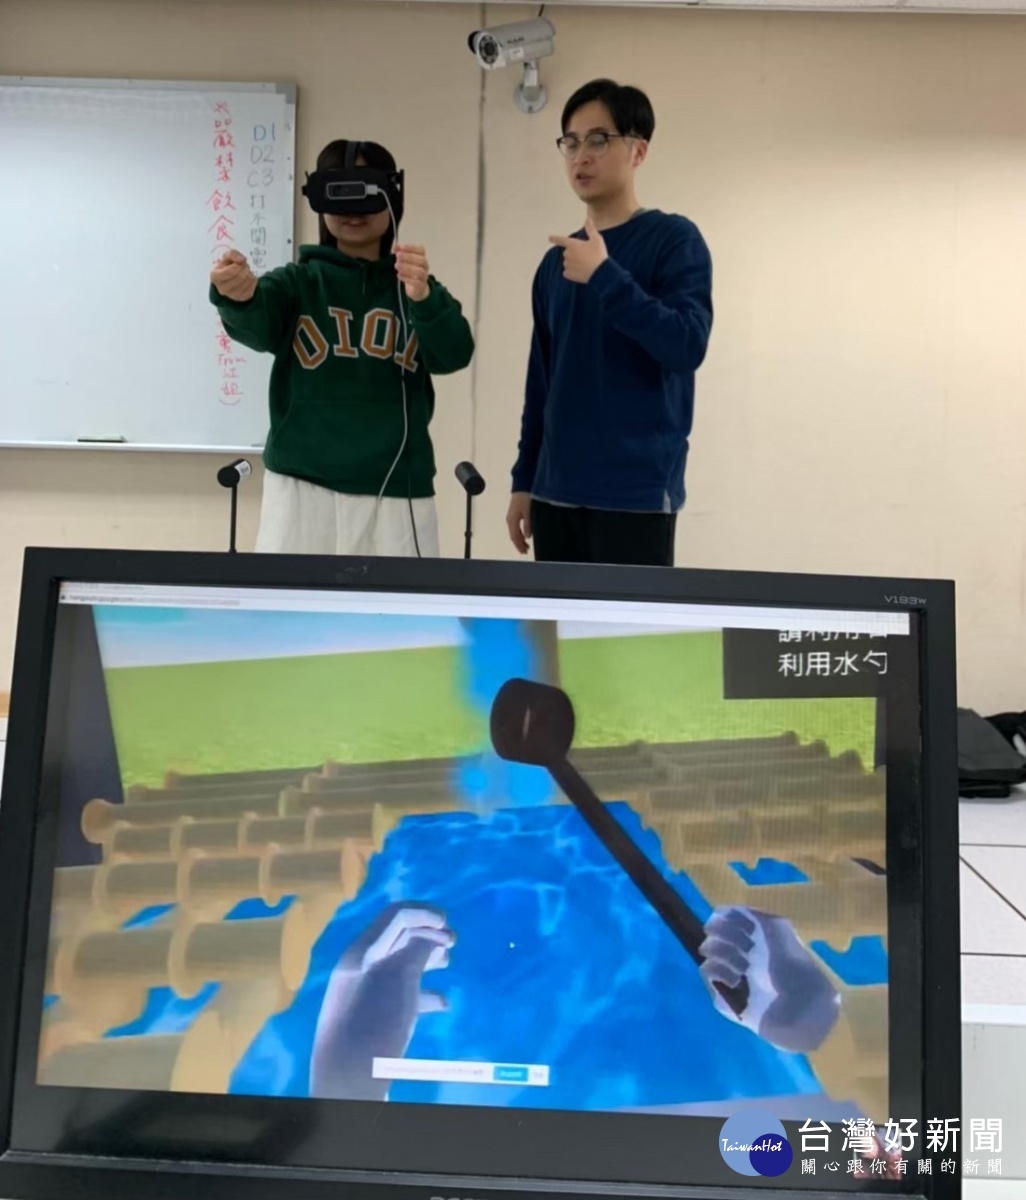 元智VR實境日本文化 學習語言更輕鬆